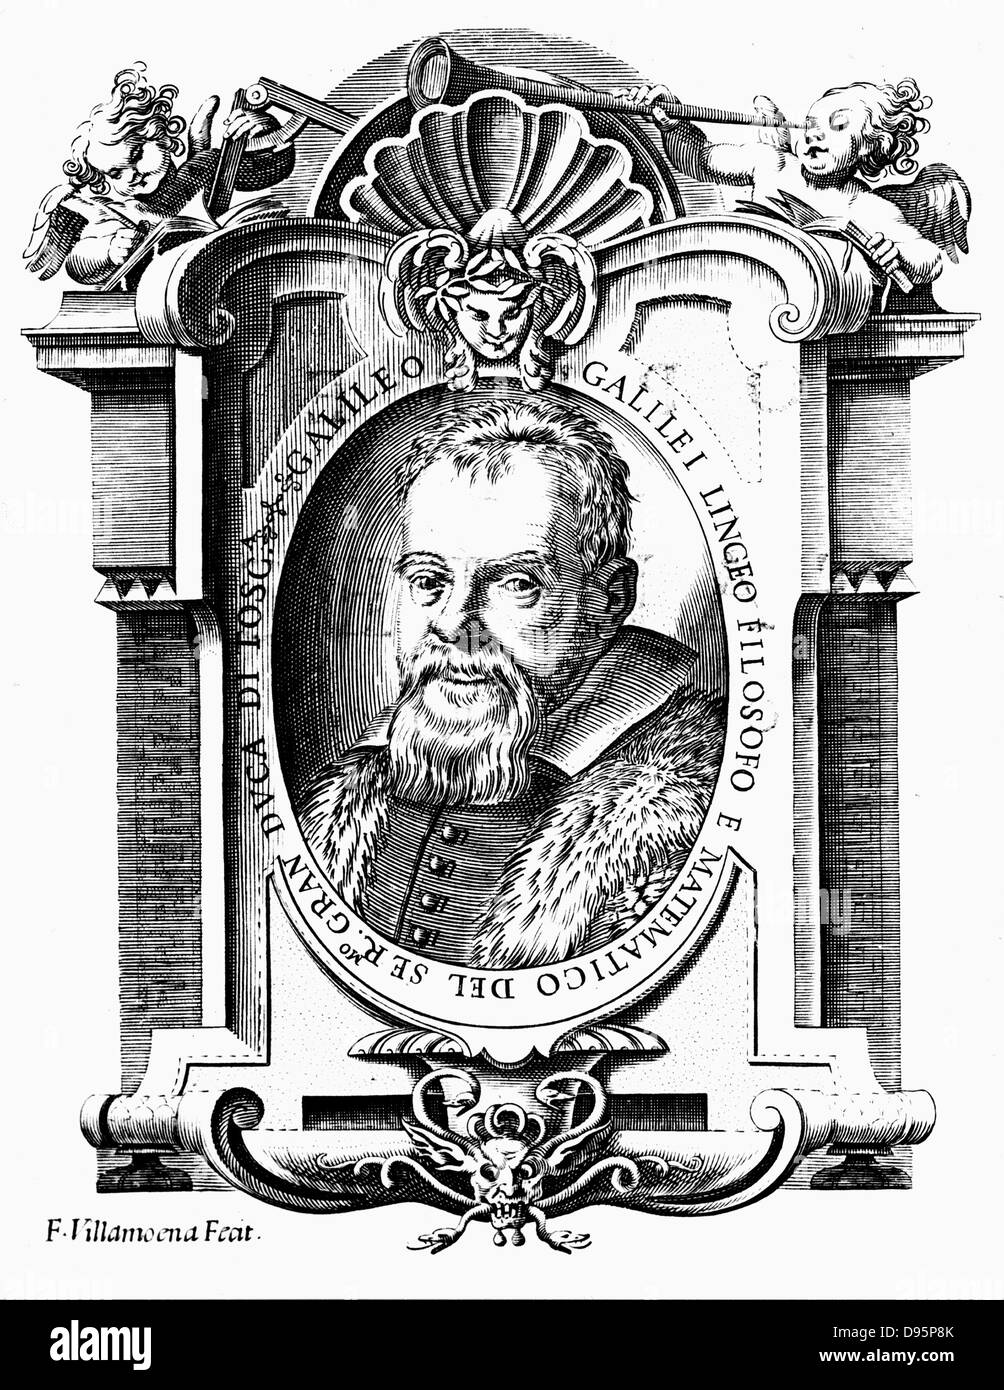 Galileo Galilei (1564-1642) Italiano astronomo e matematico. Ritratto dal frontespizio del suo "Istoria' (1613) e 'Il Saggiatore" (1623). Cherubino, sinistra, detiene Galileo compasso militare, mentre quello a destra contiene un telescopio. Incisione su rame. Foto Stock